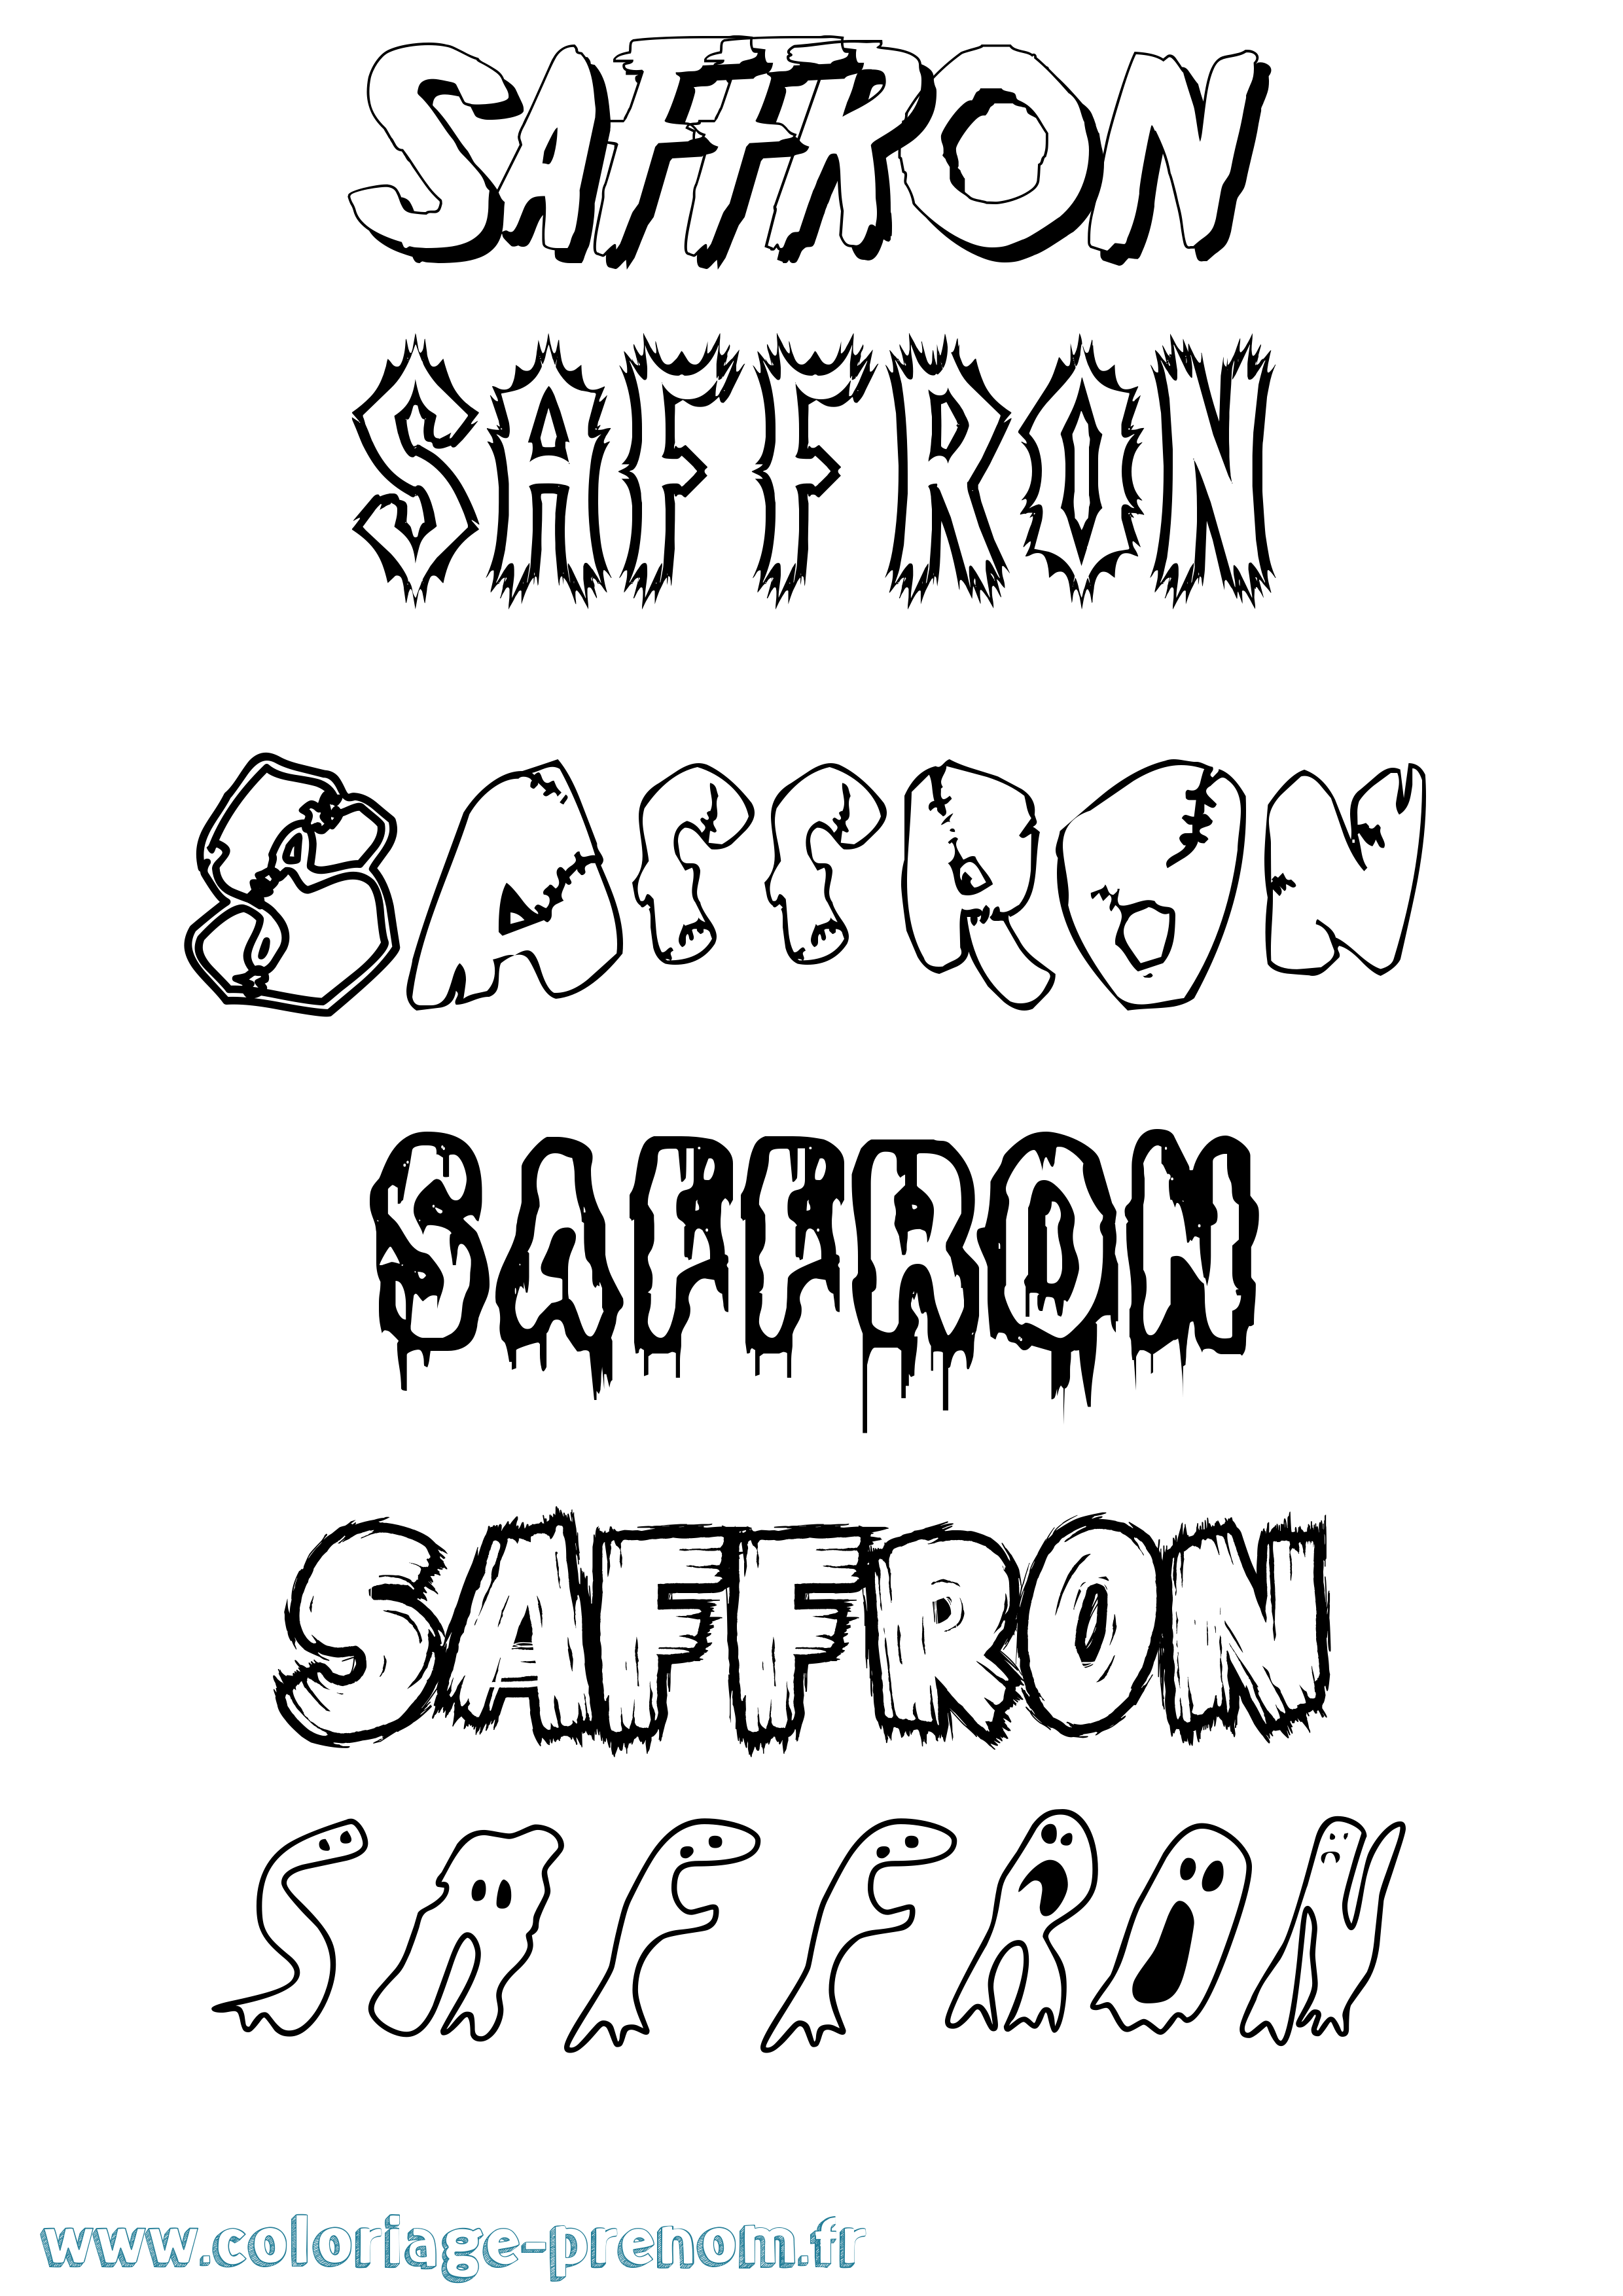 Coloriage prénom Saffron Frisson